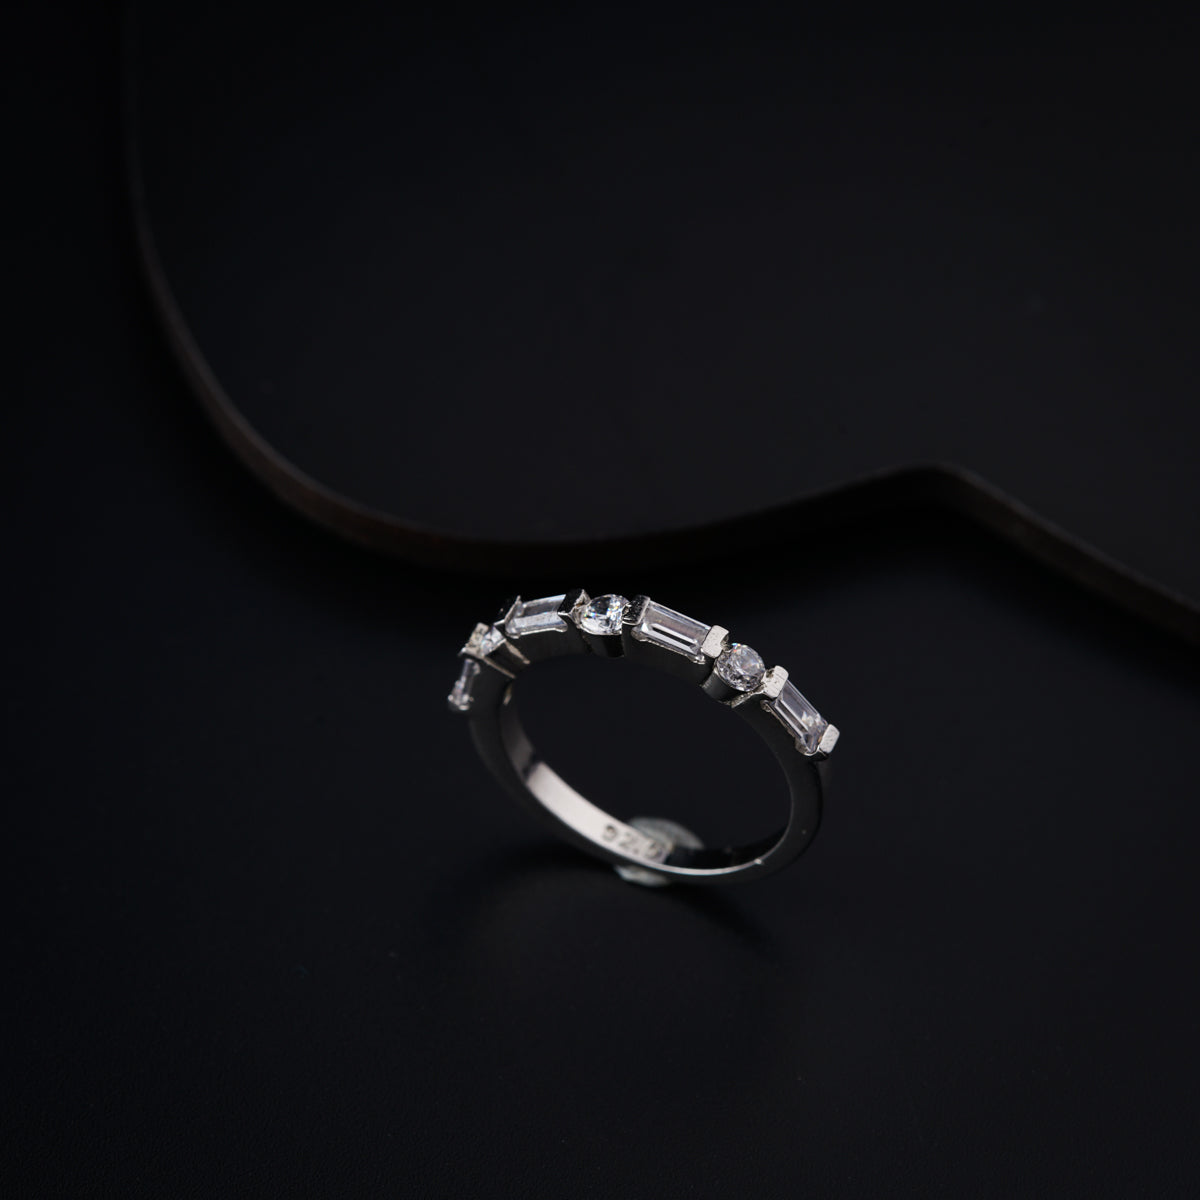 Sterling Silver Zircon Ring